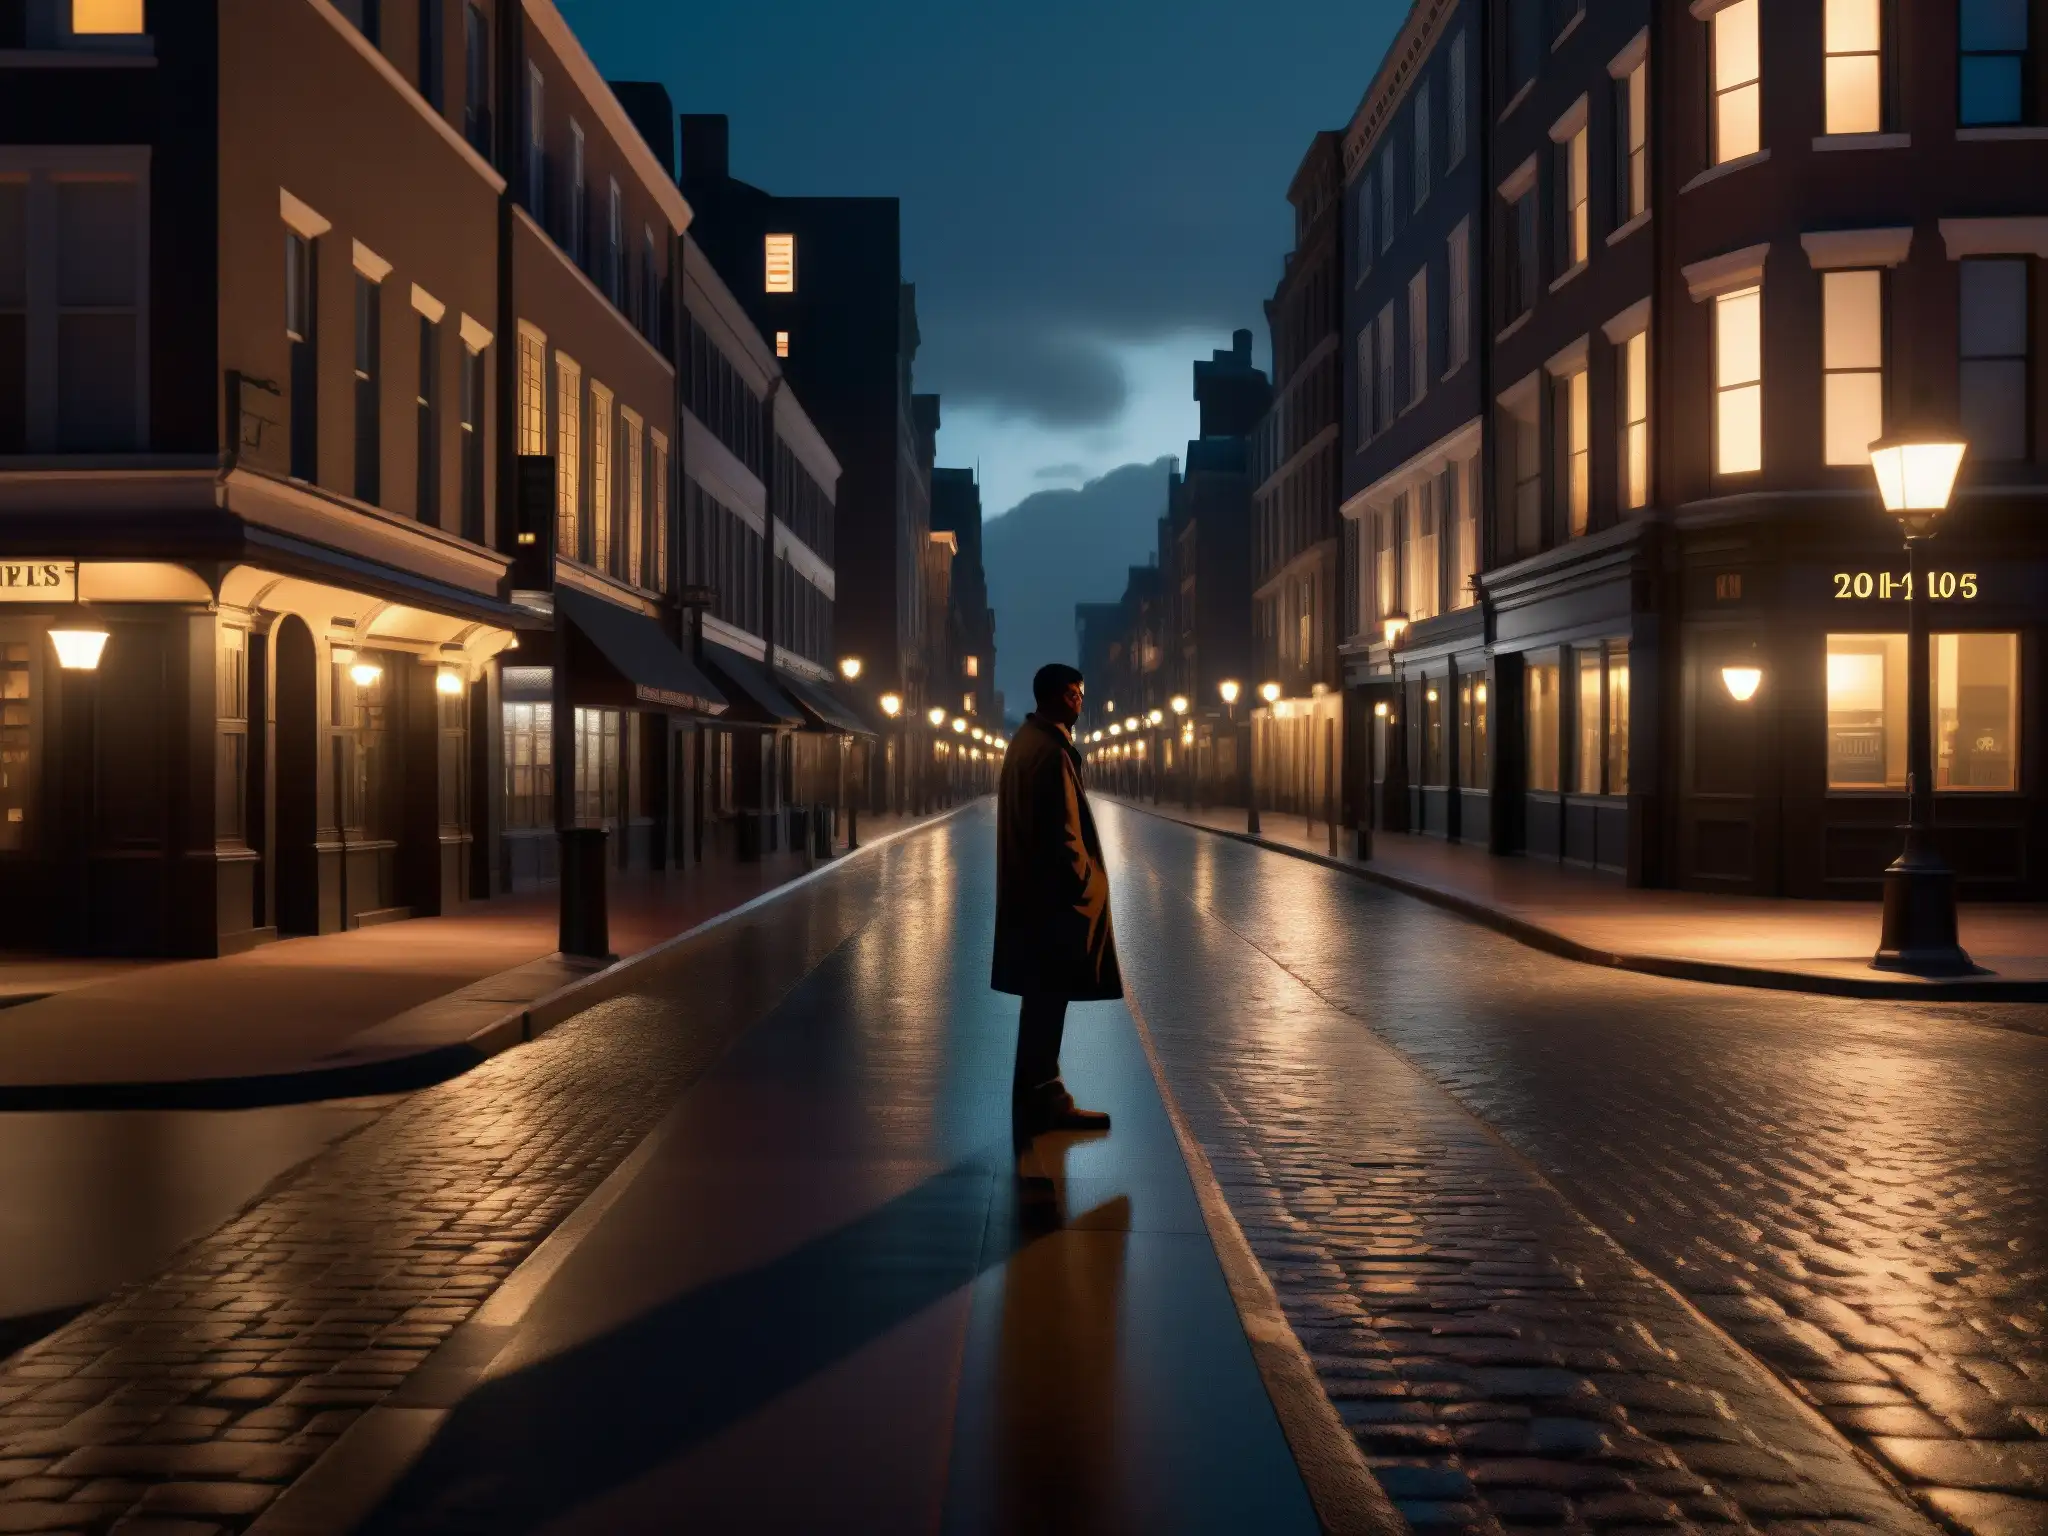 Un misterioso y ominoso callejón urbano de noche, con figuras y sombras que crean una atmósfera inquietante